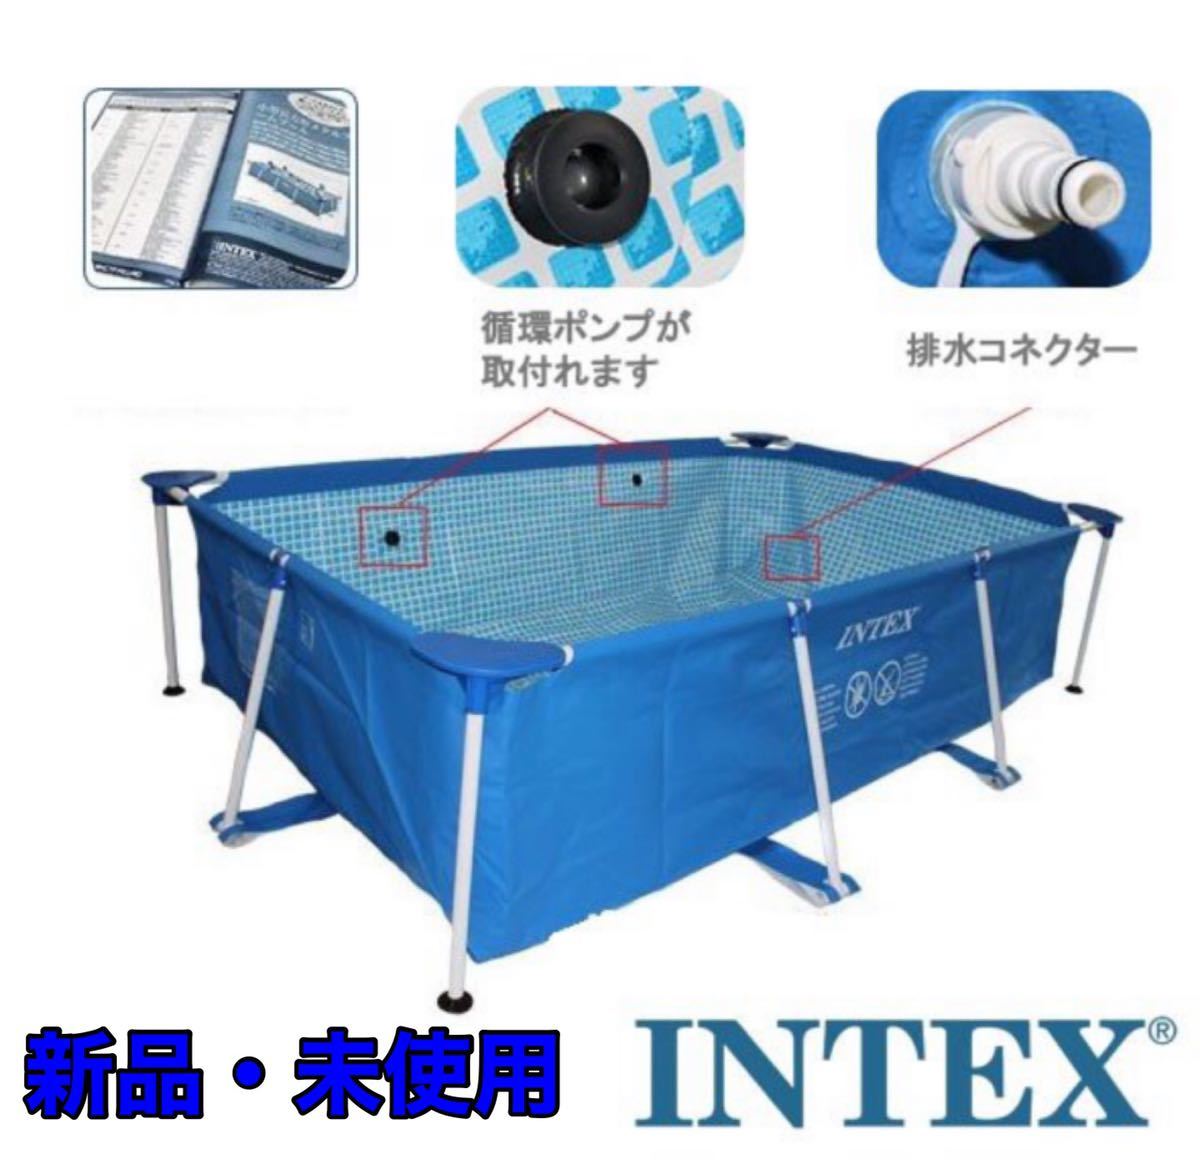 INTEX(インテックス) レクタングラフレームプール プールカバー付き